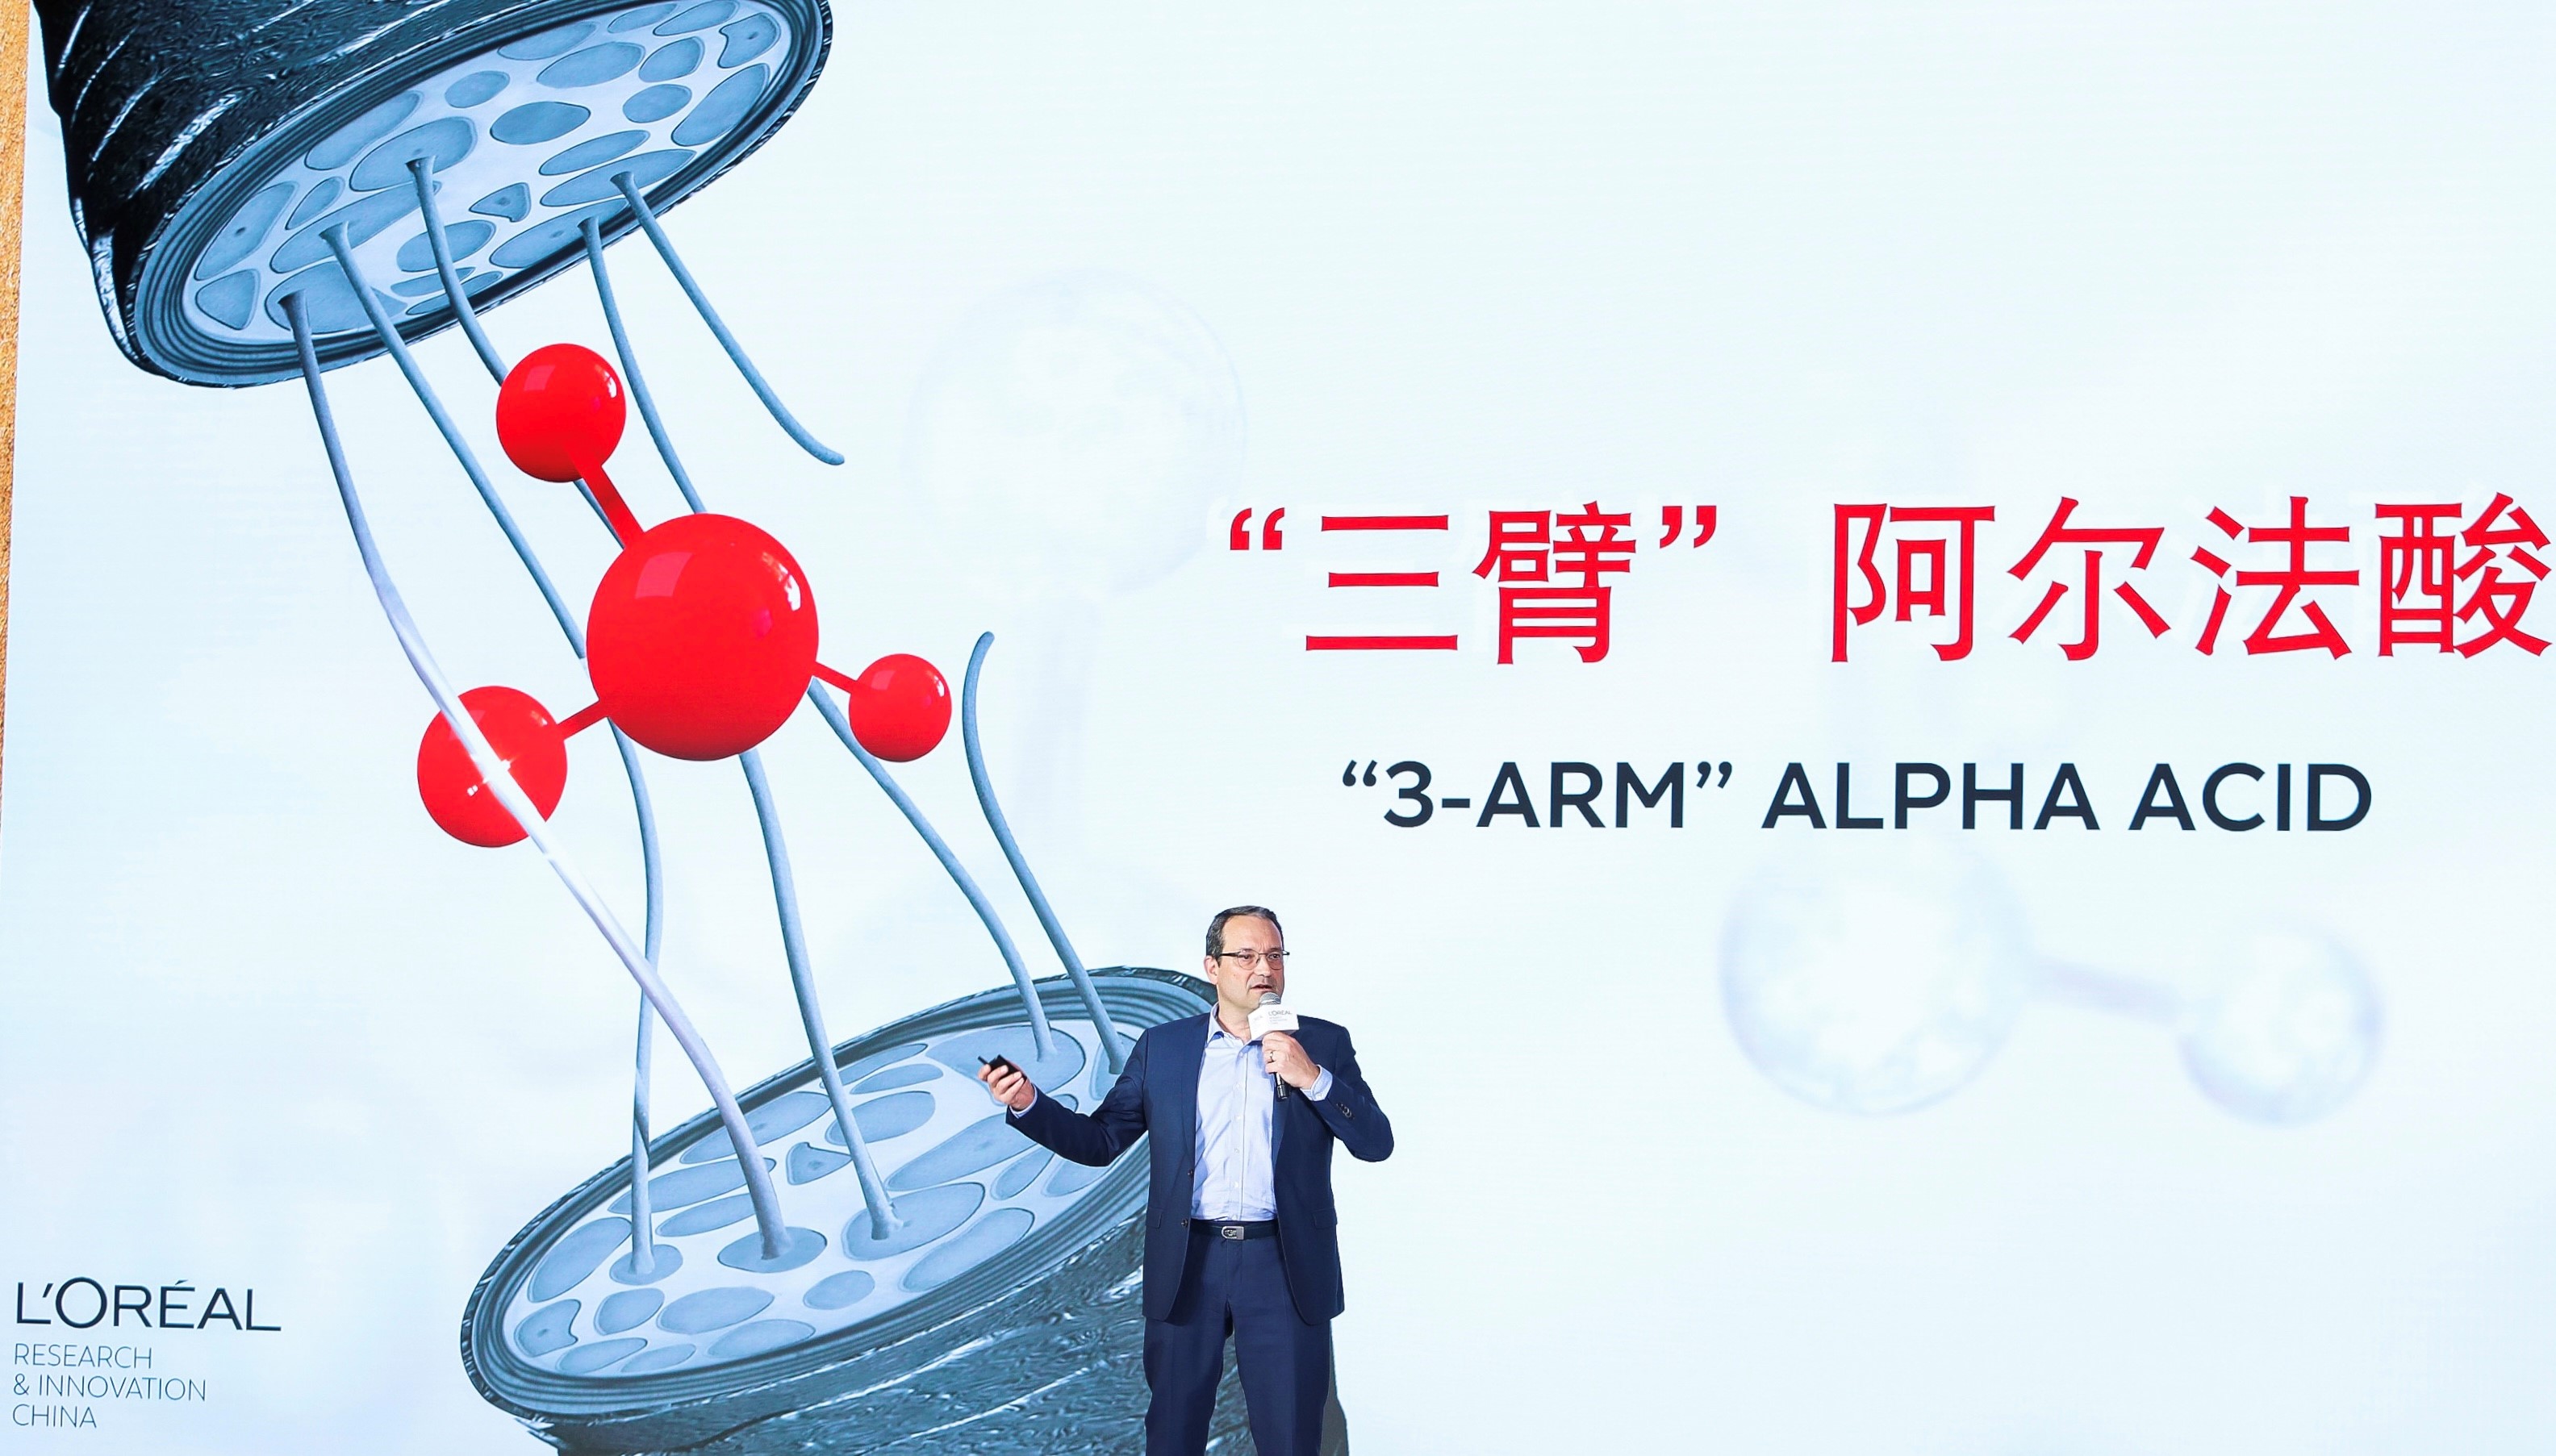 重新连接断裂的化学键，欧莱雅中国重磅发布 “发芯绷带”系列产品